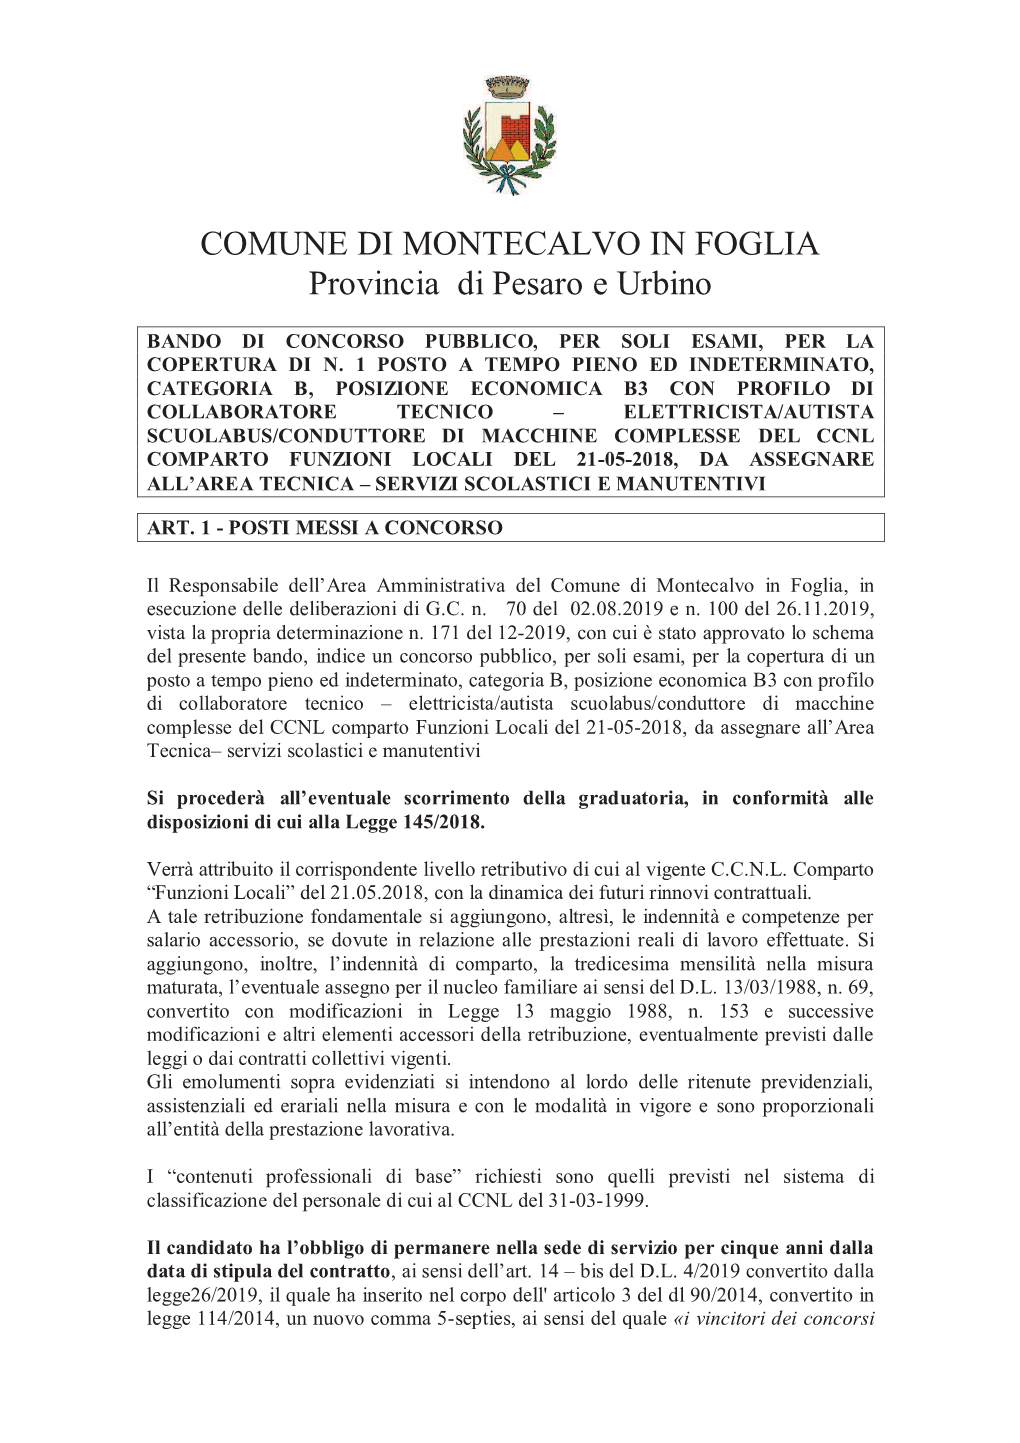 COMUNE DI MONTECALVO in FOGLIA Provincia Di Pesaro E Urbino